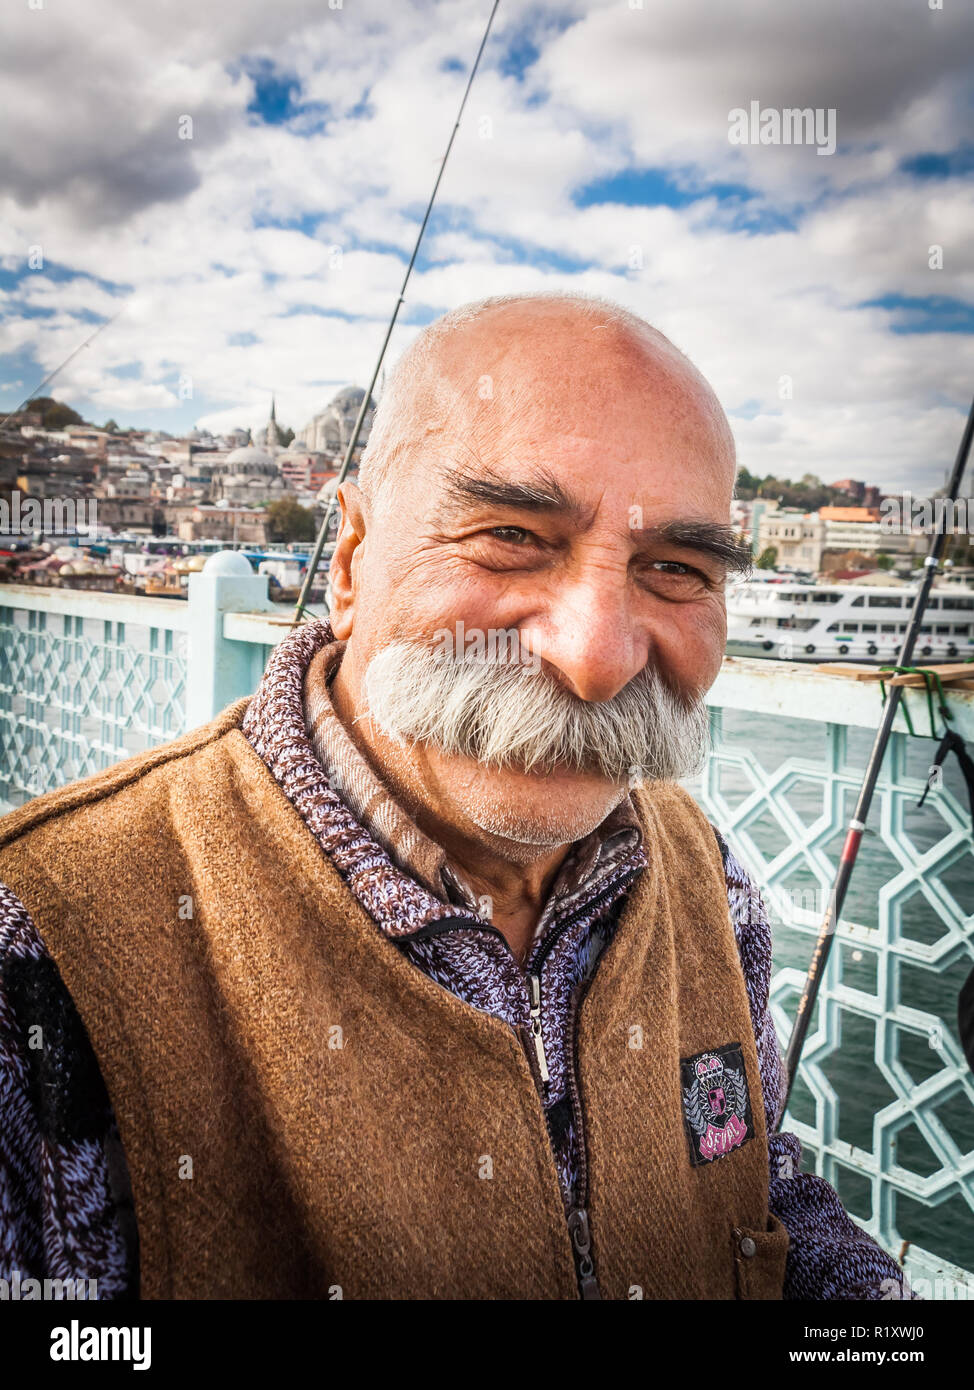 Istanbul, Turkey, November 9, 2012: Turkish man with amazing moustache. Stock Photo